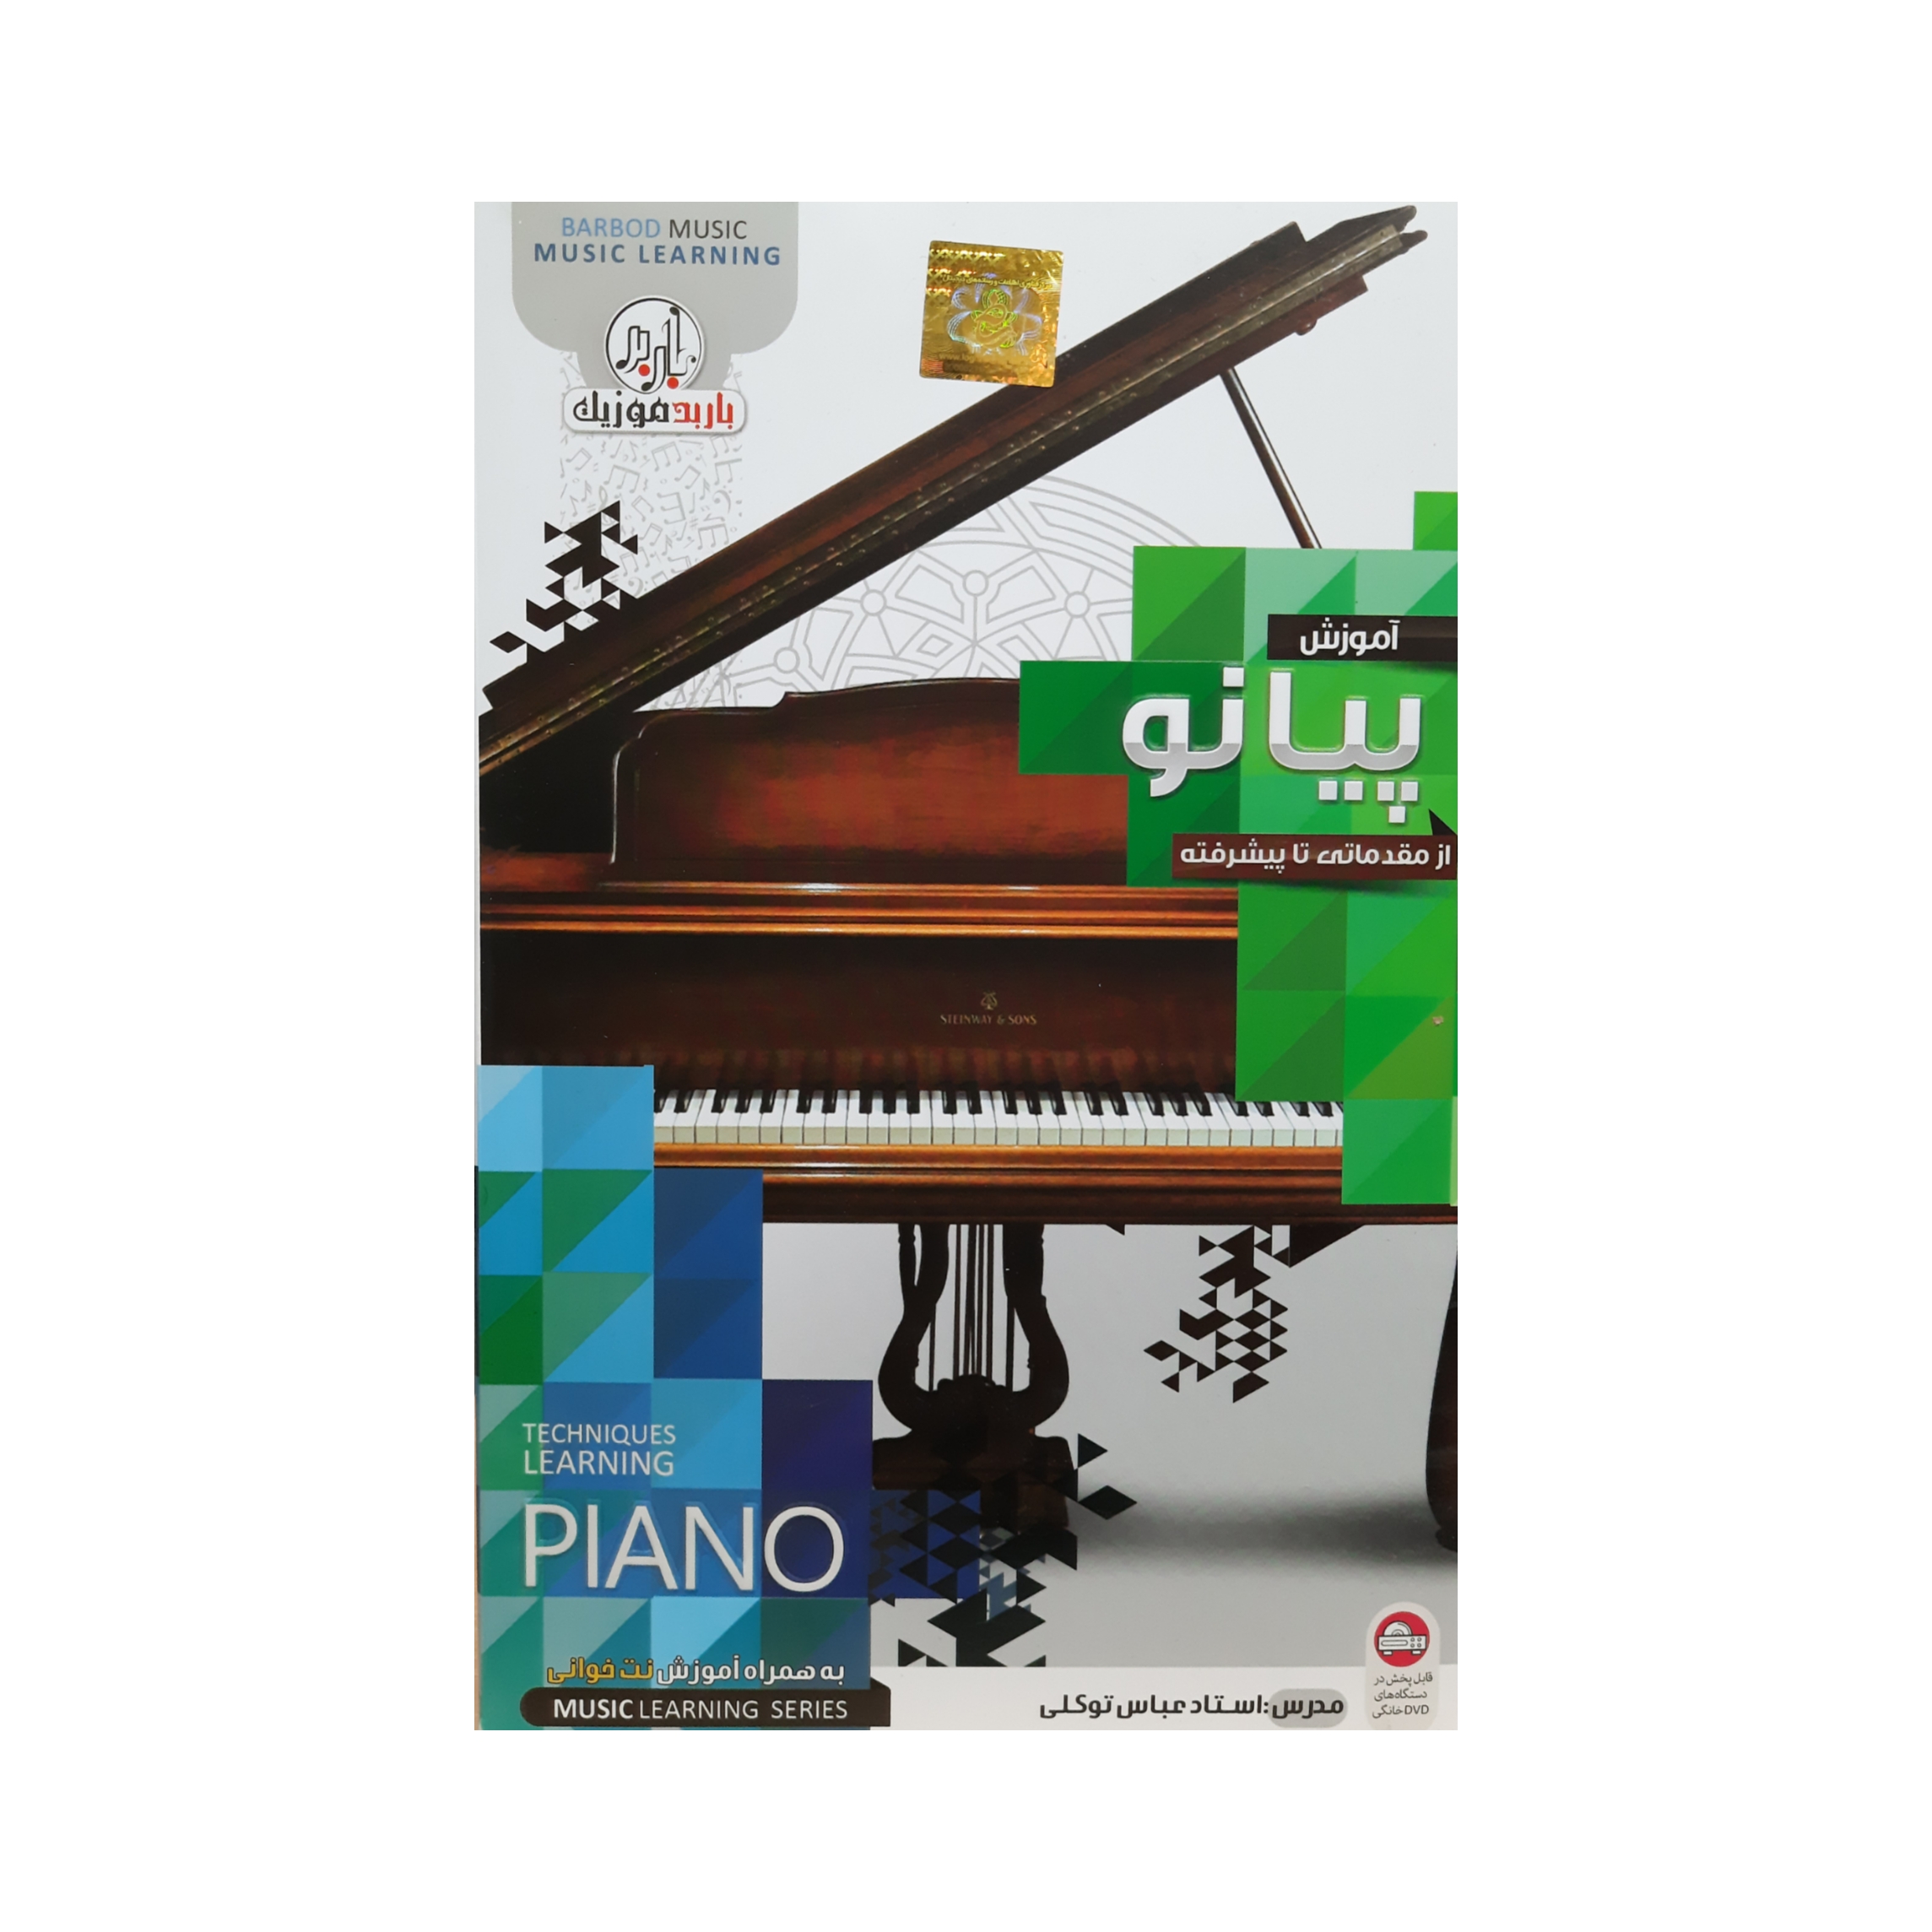 آموزش پیانو از مقدماتی تا پیشرفته نشر باربد